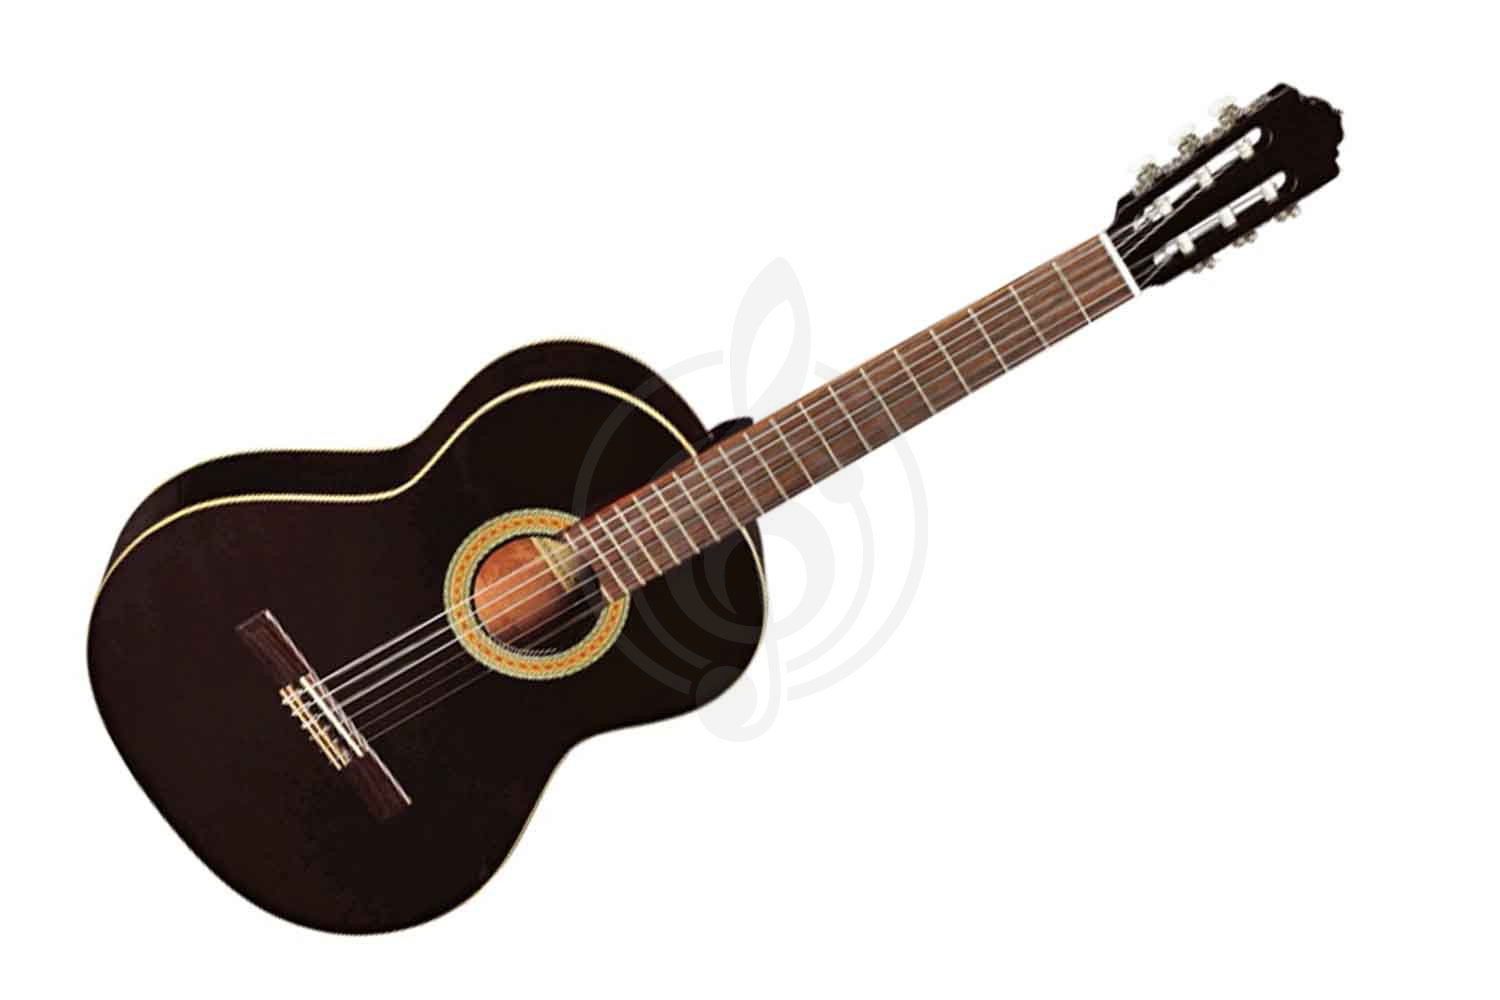 Классическая гитара 4/4 Классические гитары 4/4 Almansa ALMANSA 403 Black- гитара классическая 403 Black - фото 1